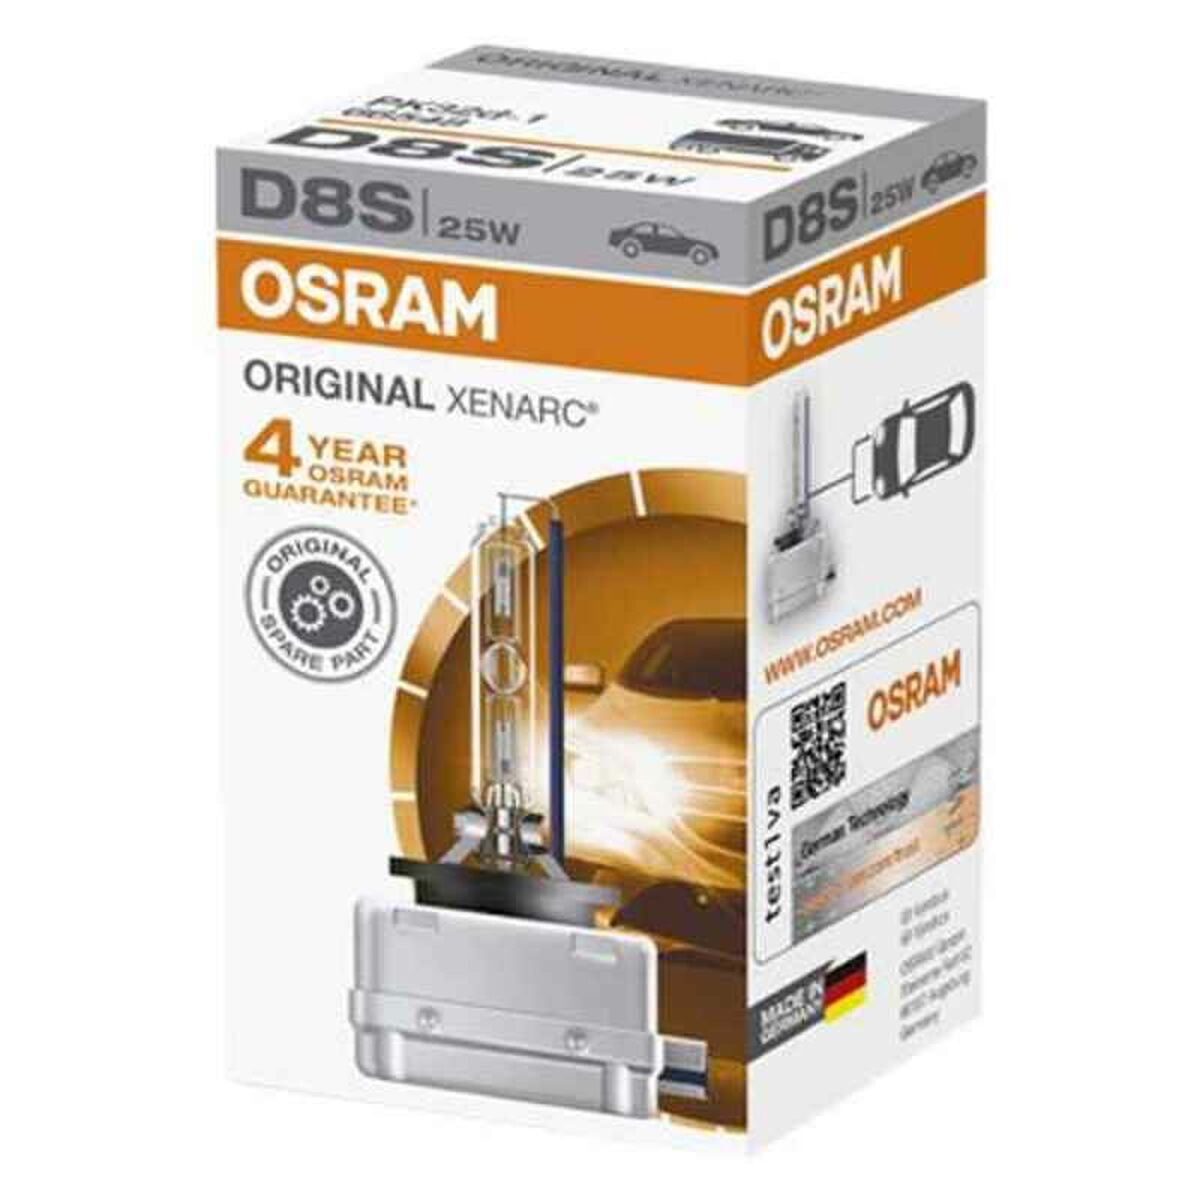 Autopirn OS66548 Osram OS66548 D8S 25W 40V